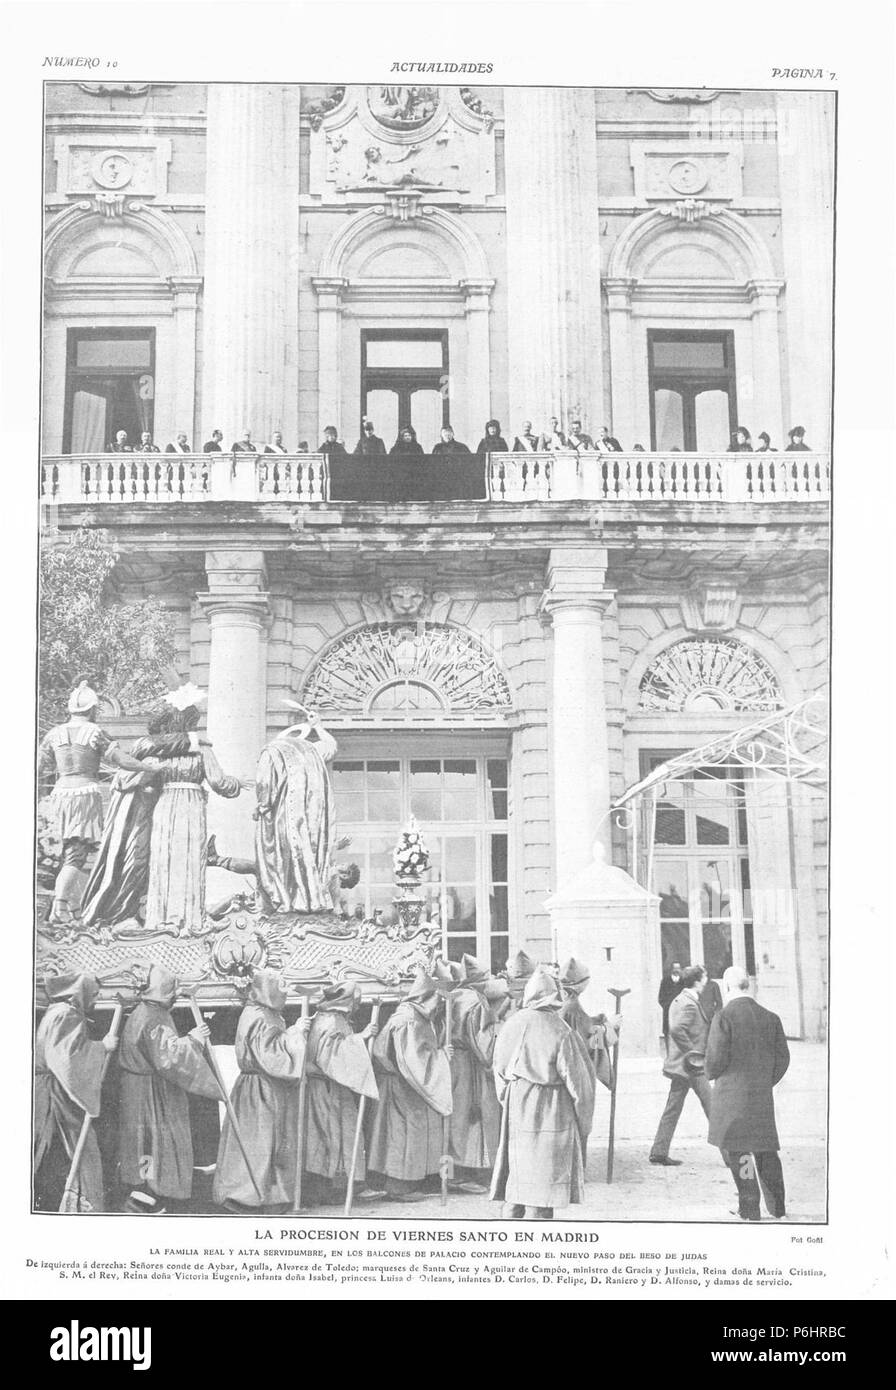 1908-04-23, Actualidades, La procesión de Viernes Santo en Madrid, Goñi. Stock Photo